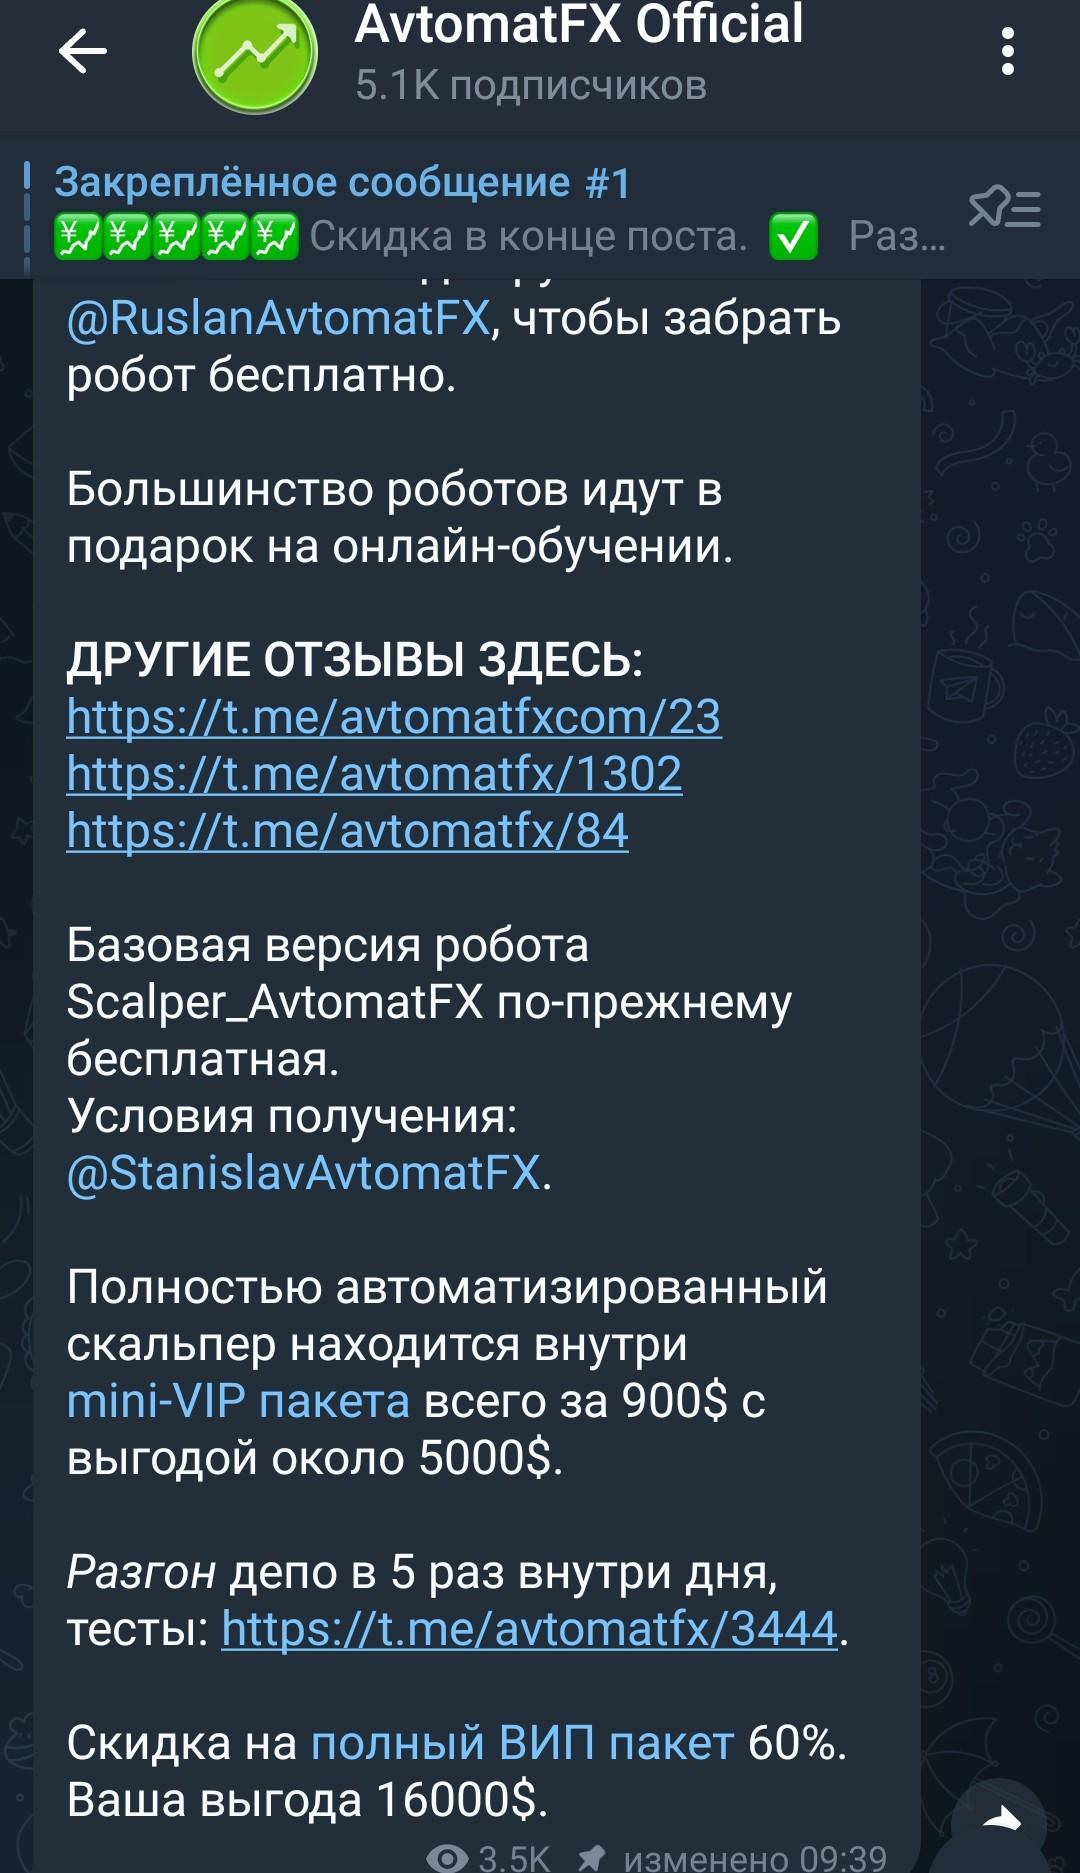 AvtomatFX Official телеграмм